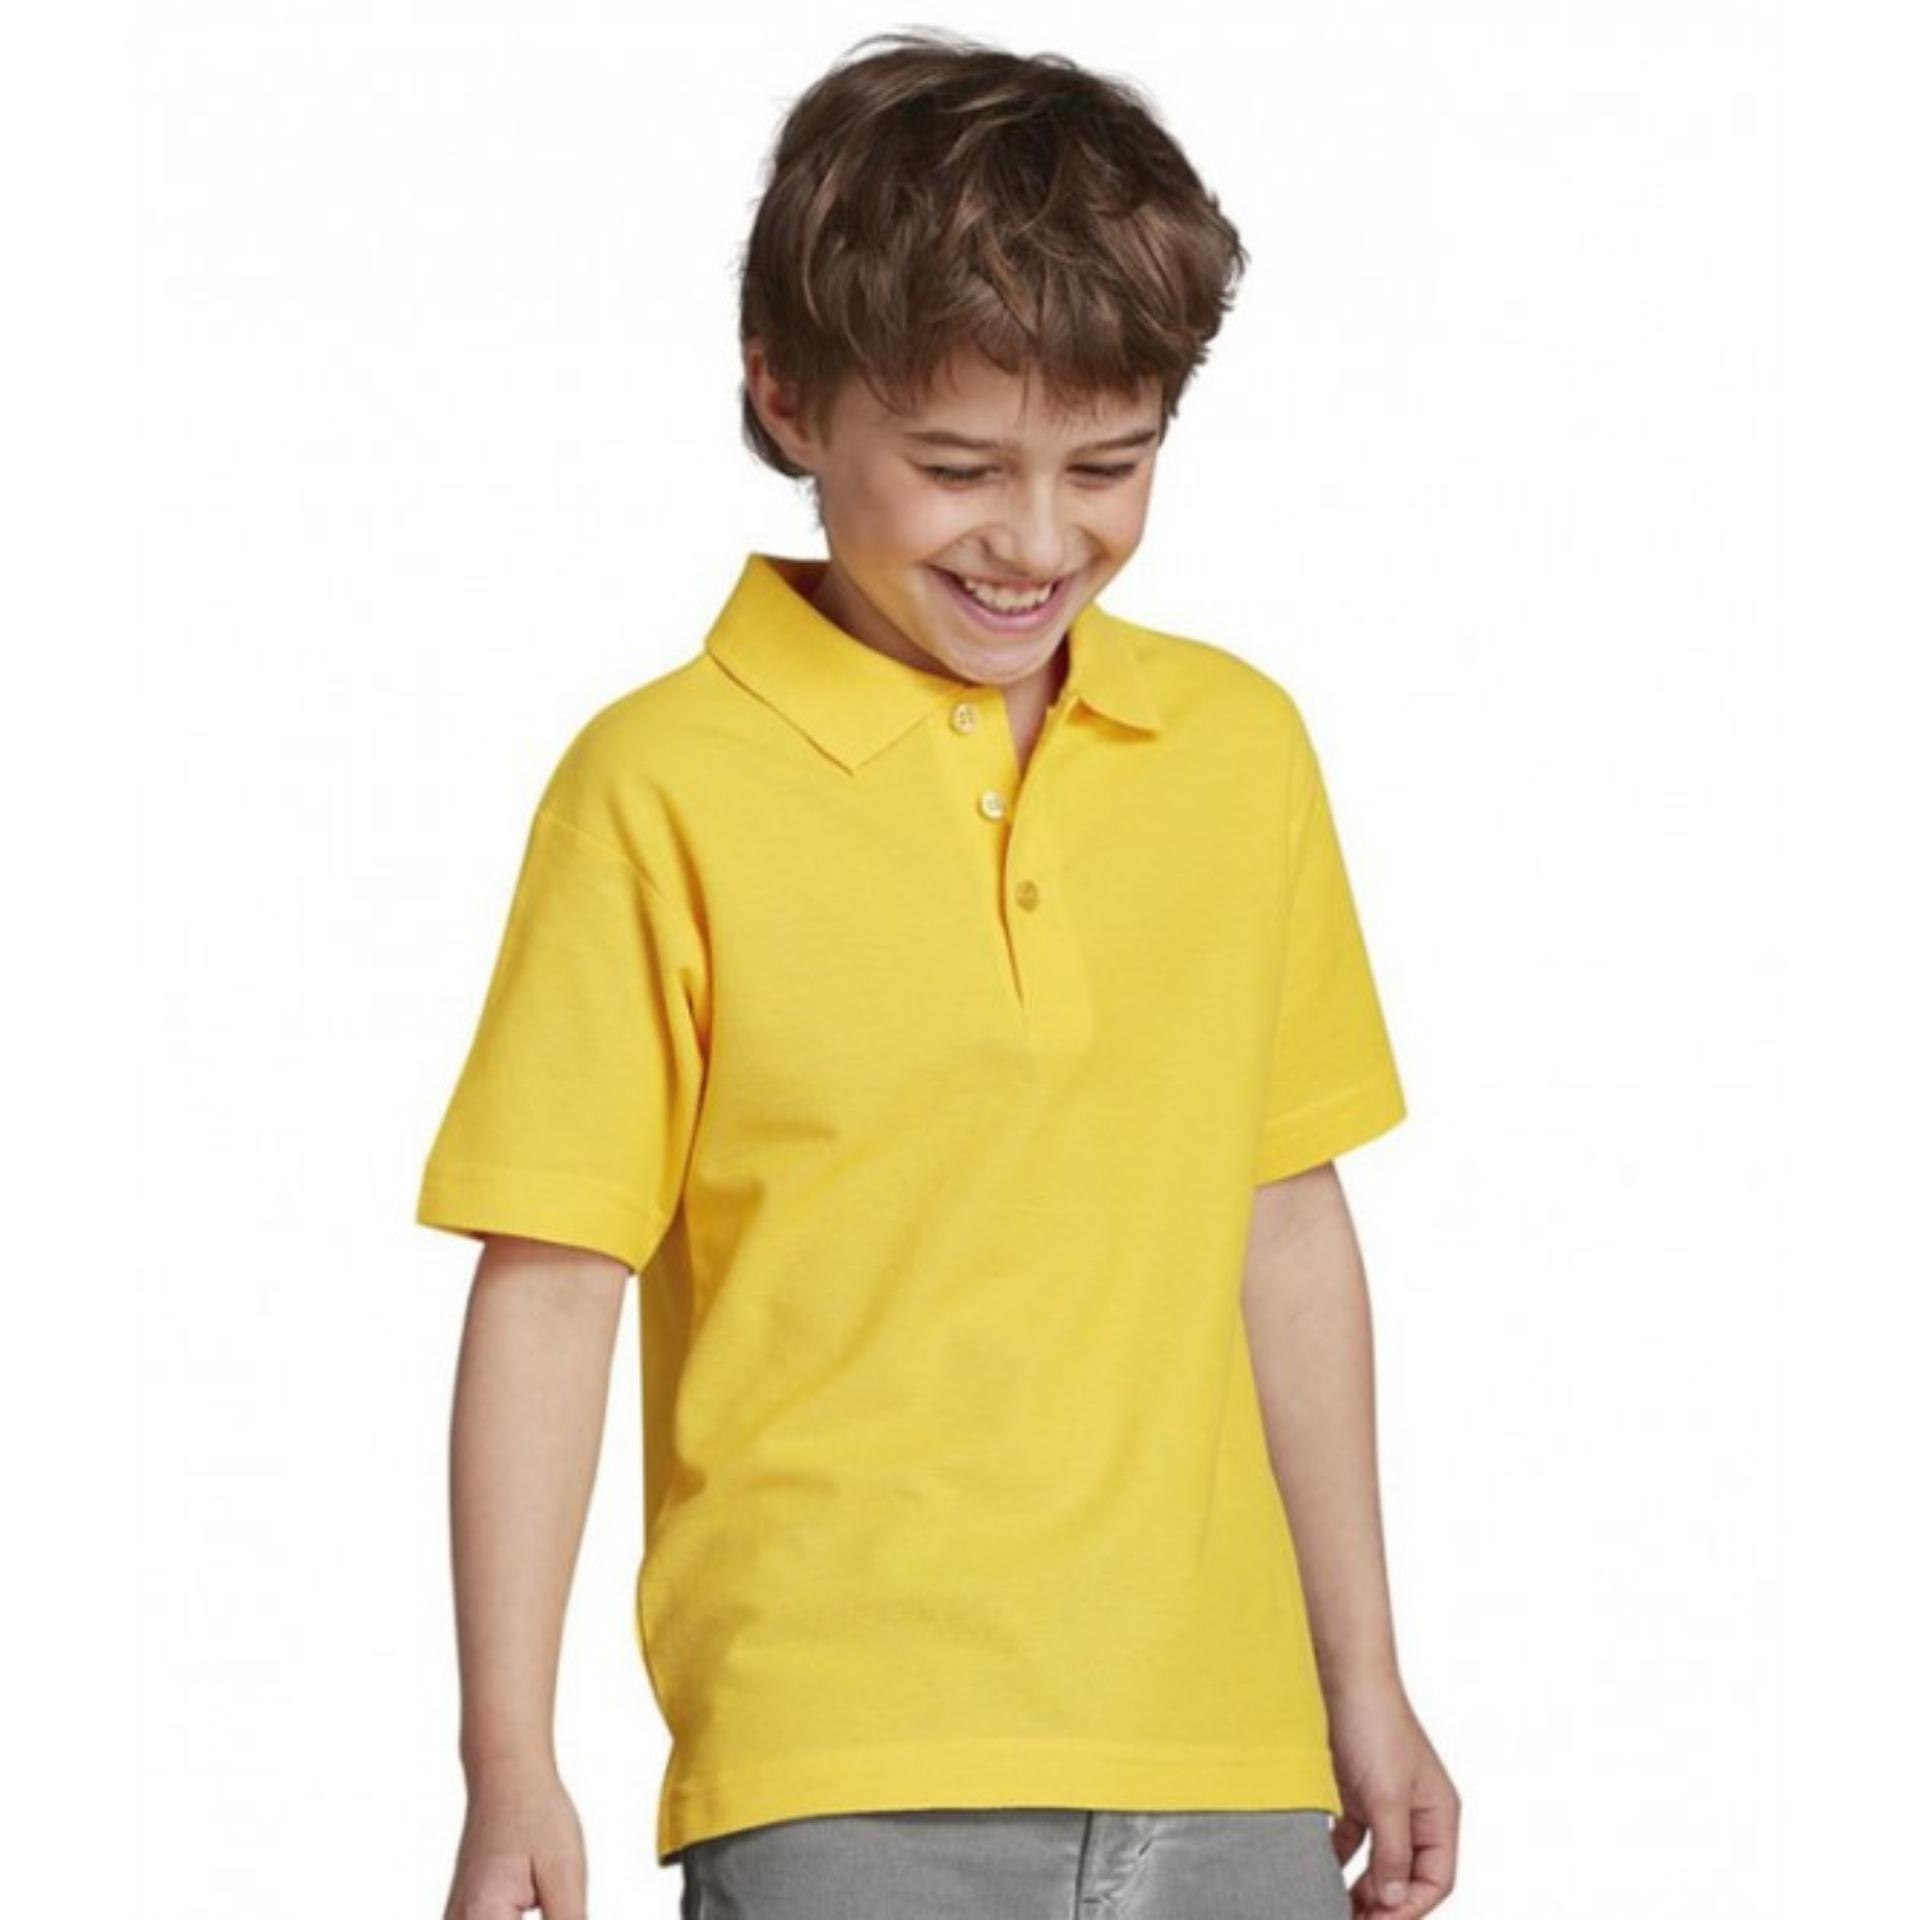 Ребенок в желтой футболке